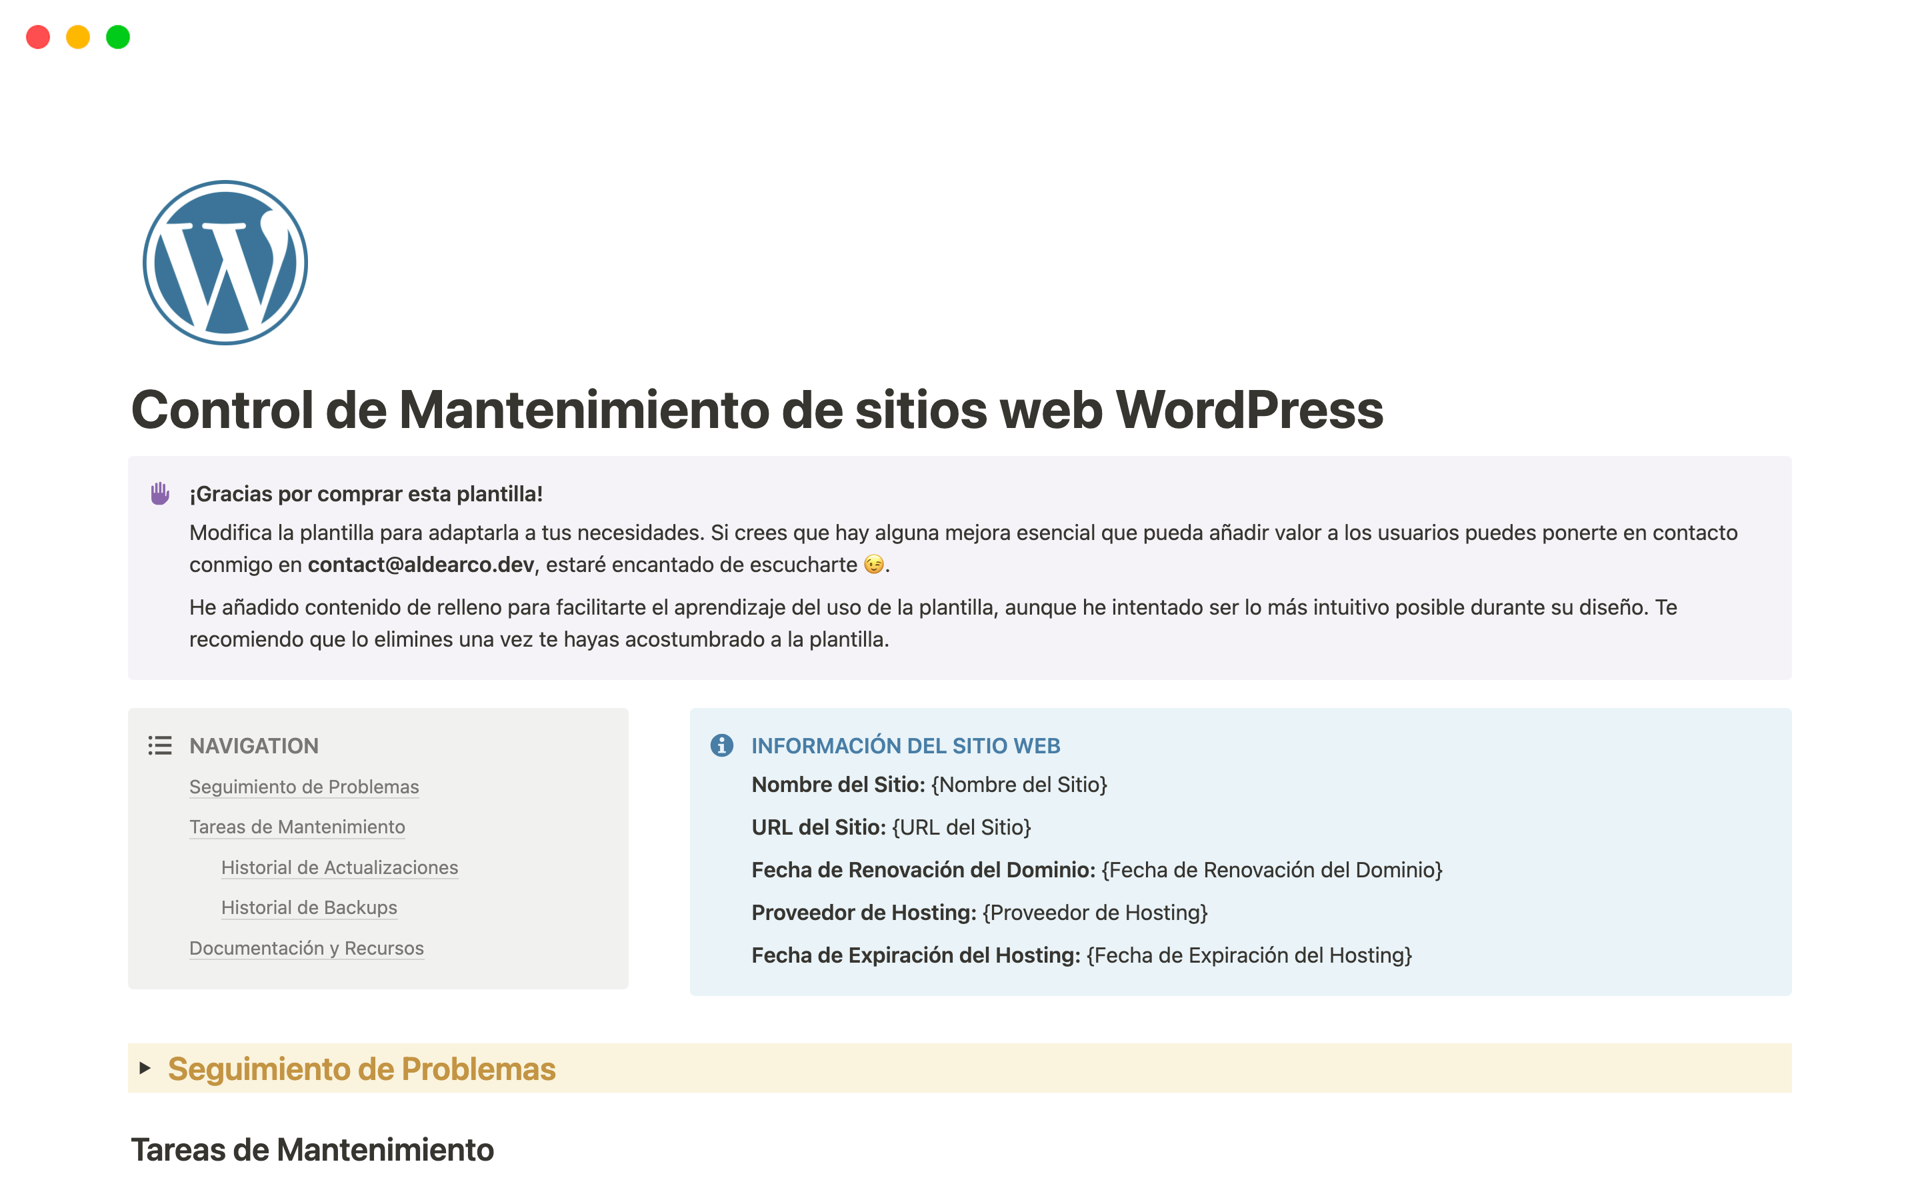 Agiliza el mantenimiento de sitios web WordPress con esta plantilla personalizable de Notion, que ofrece organización centralizada, seguimiento de incidencias, gestión de tareas, registros de actualizaciones y acceso a recursos para mejorar la productividad y el rendimiento.